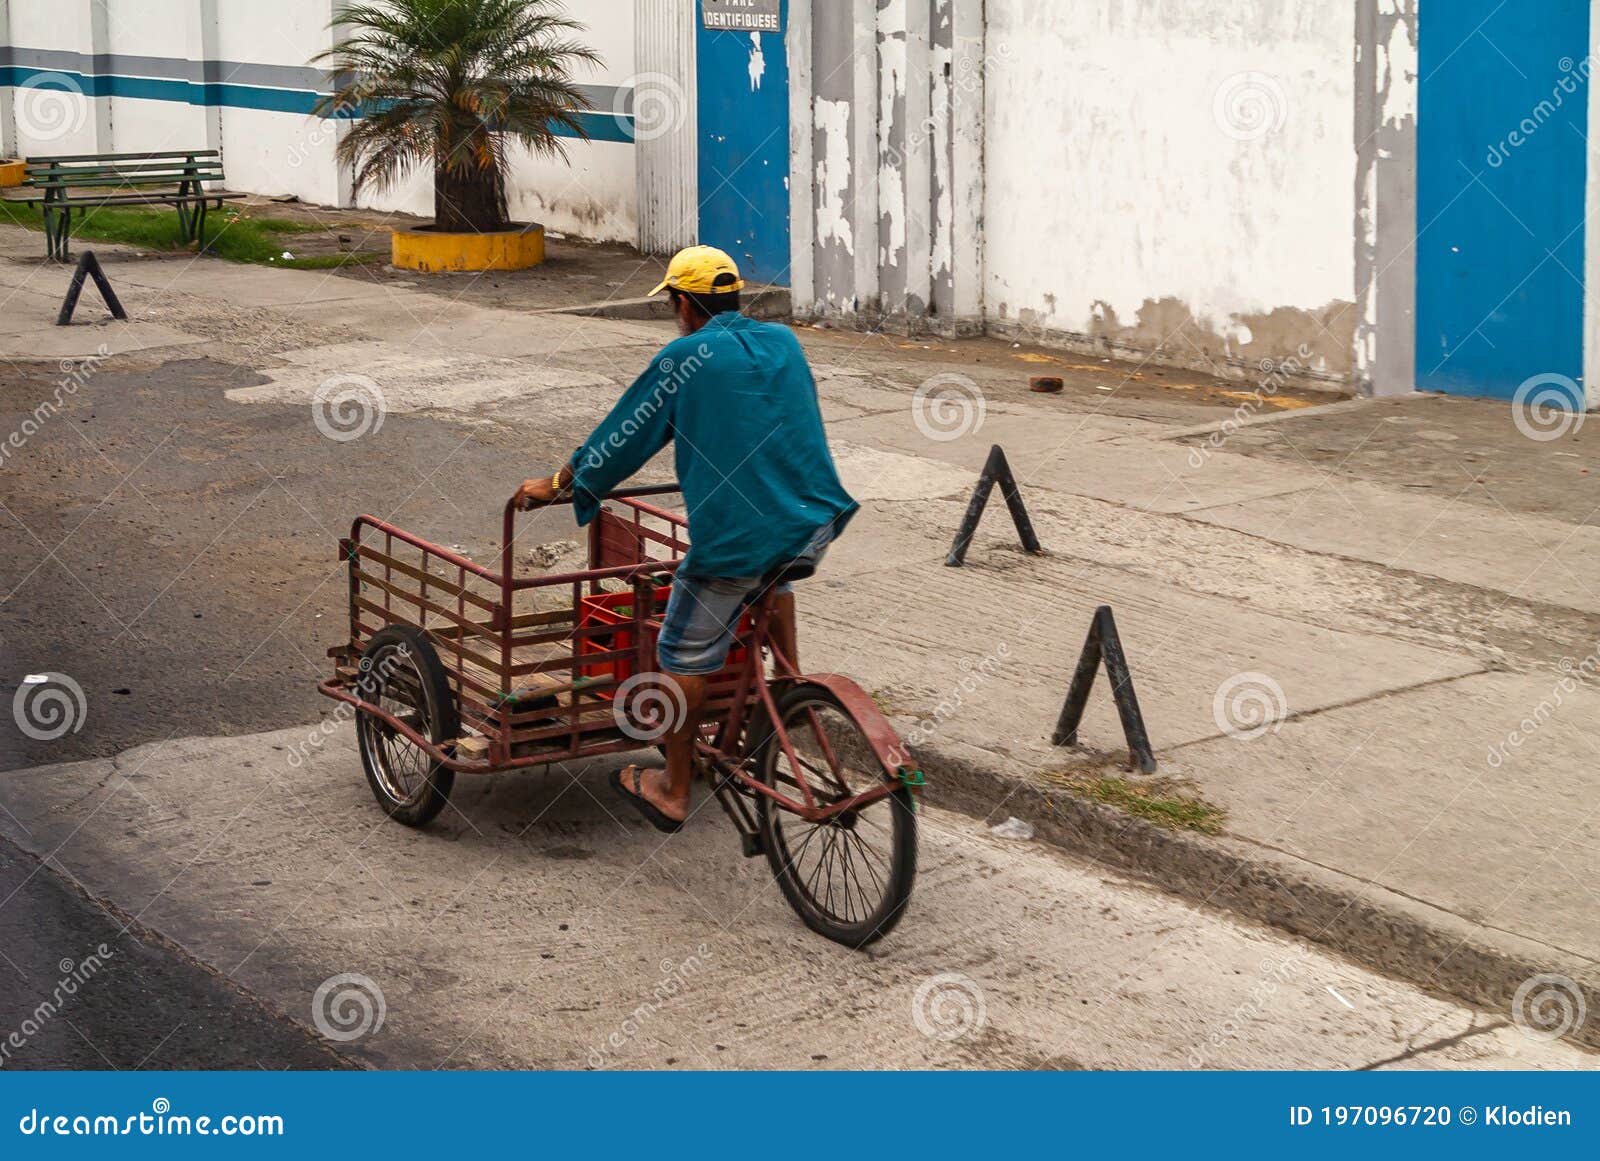 hombre-en-el-triciclo-de-entrega-manta-ecuador-diciembre-vestido-con-una-gorra-azul-y-amarilla-un-rojo-la-calle-paredes-197096720.jpg